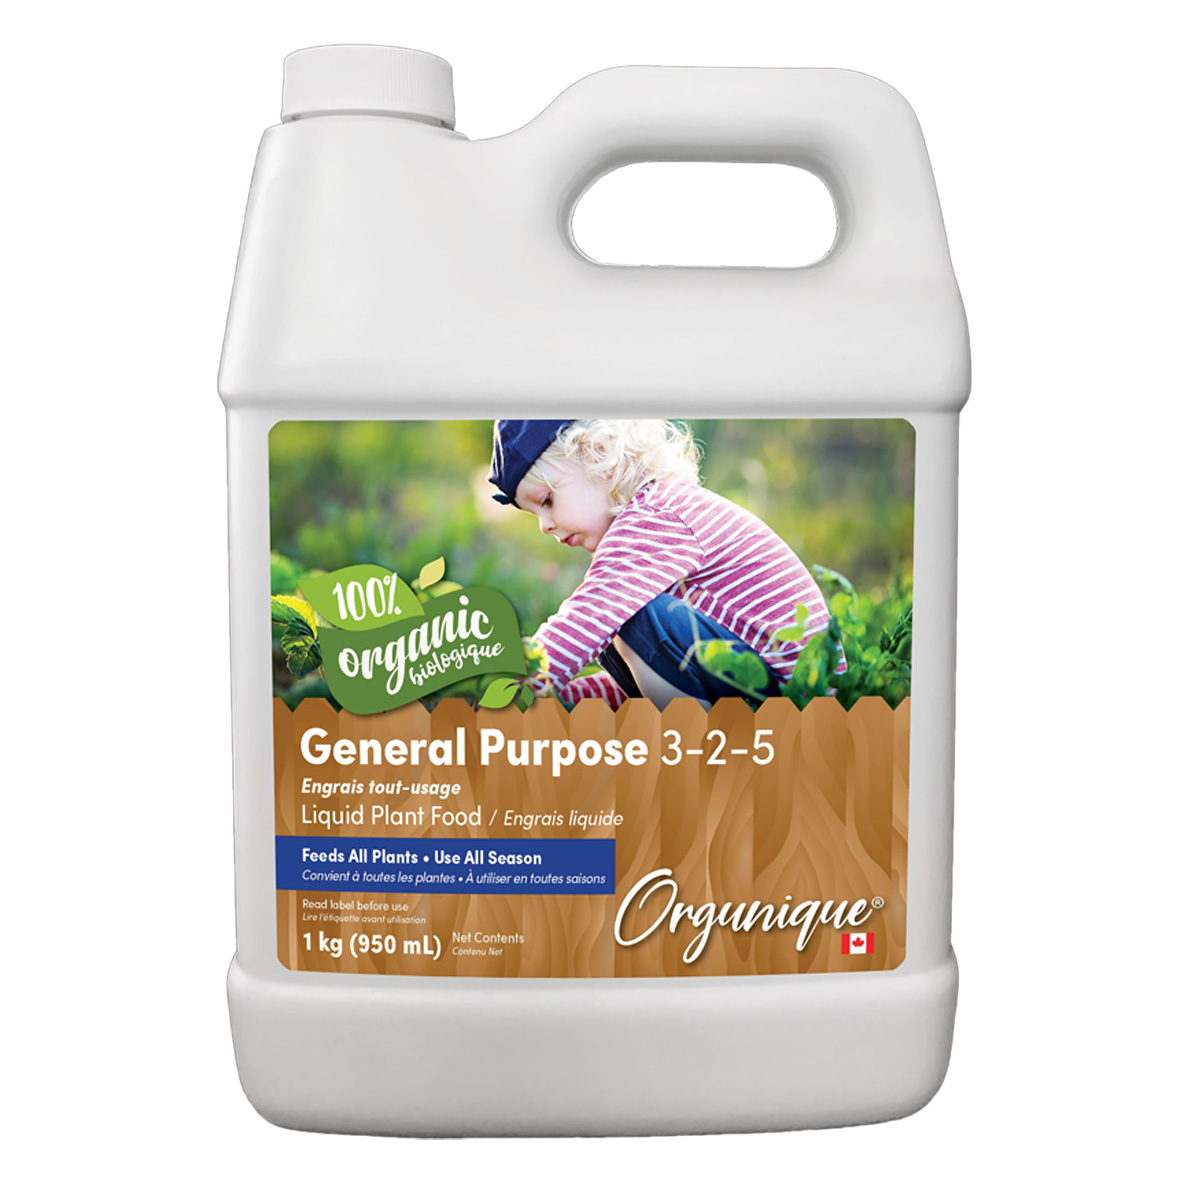 Orgunique General Purpose Liquid Plant Food 3-2-5 870ml